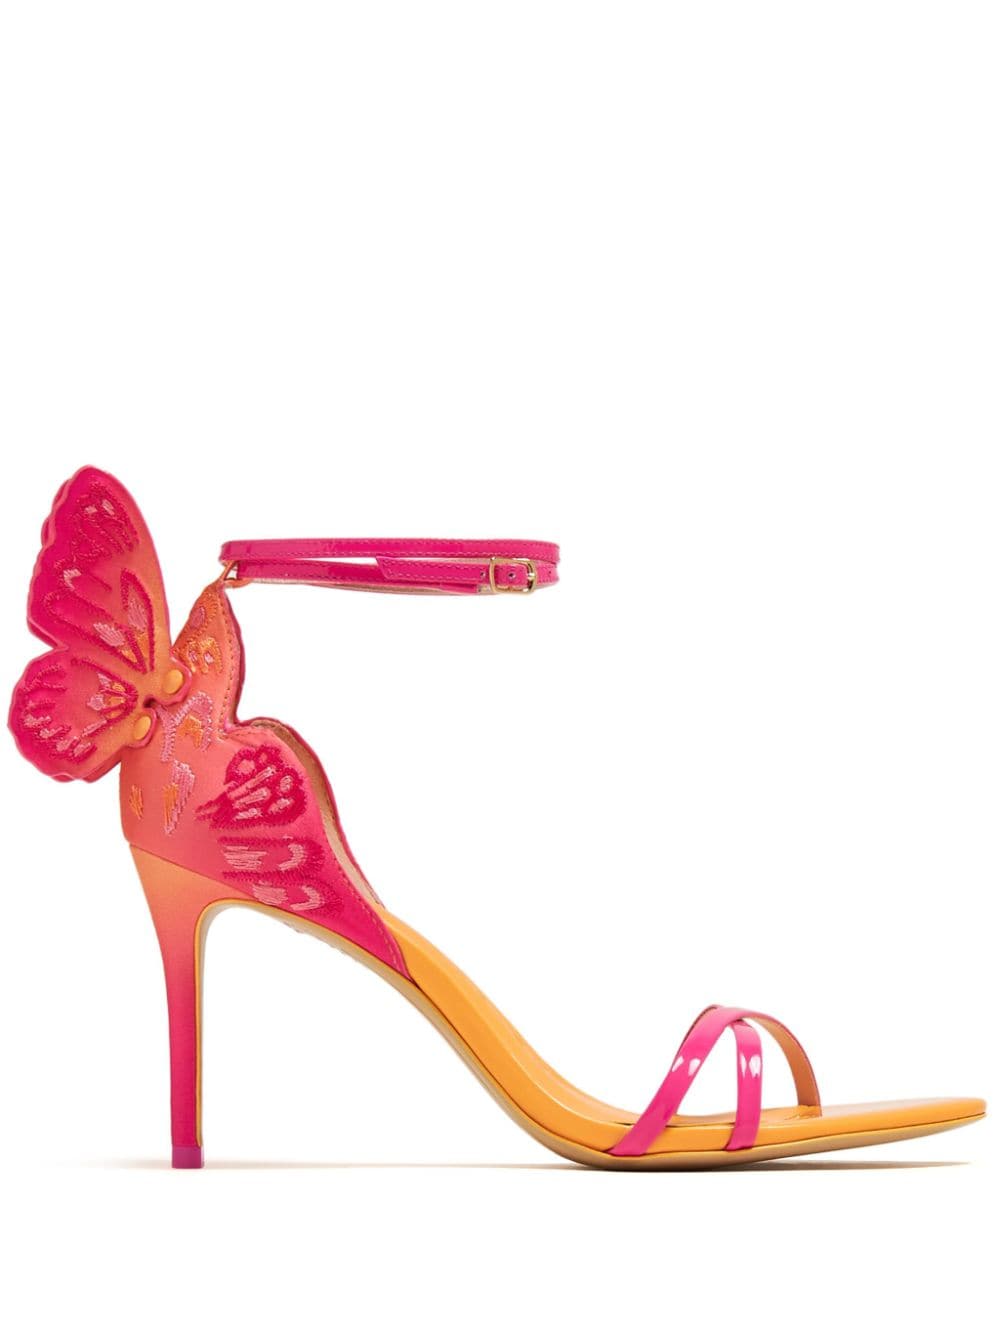 Sophia Webster Chiara leather heeled sandals - Pink von Sophia Webster